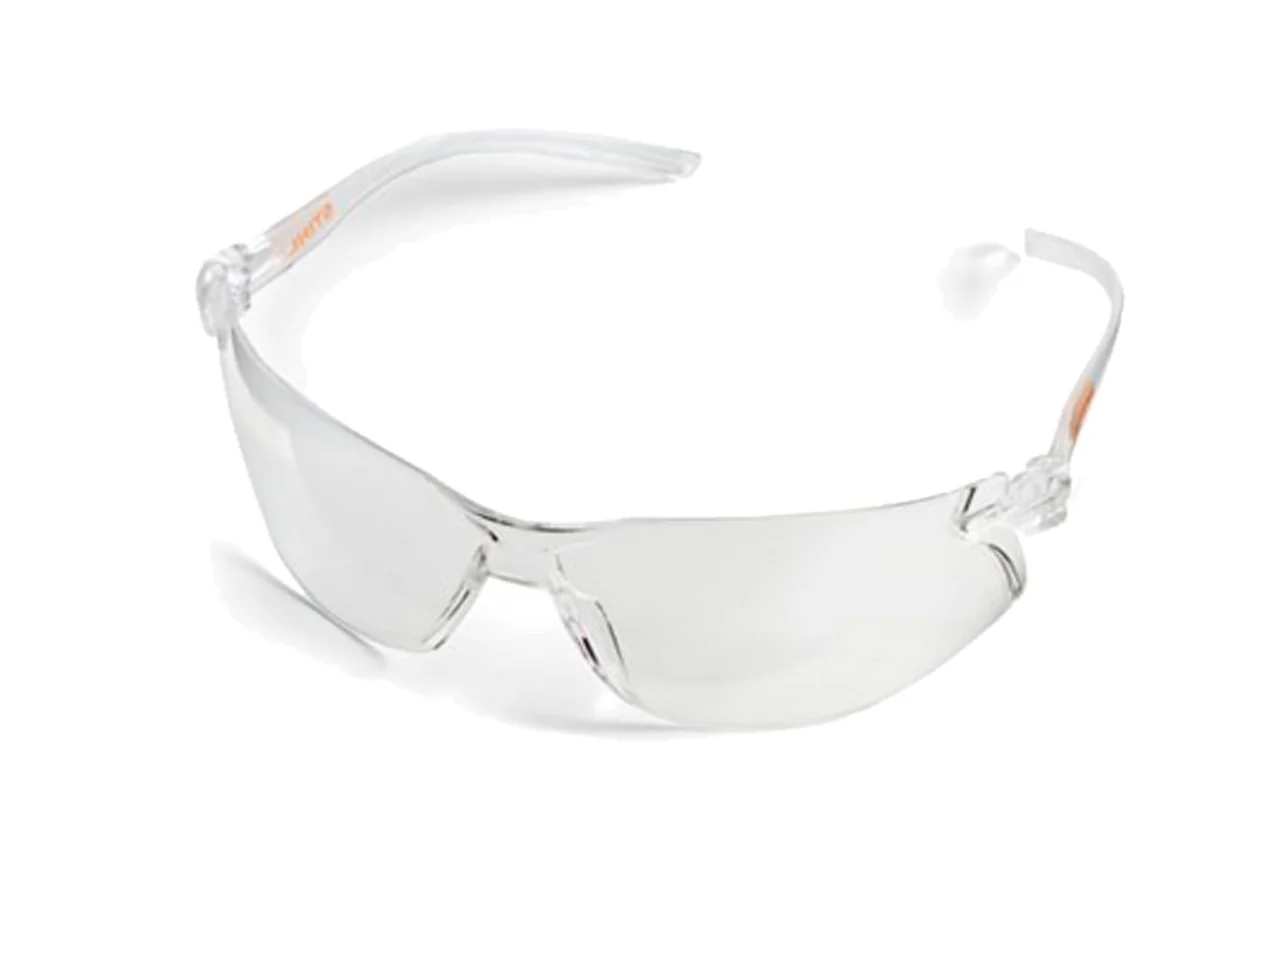 STIHL STIHL 0000 884 0377 Clear Slim Safety Glasses